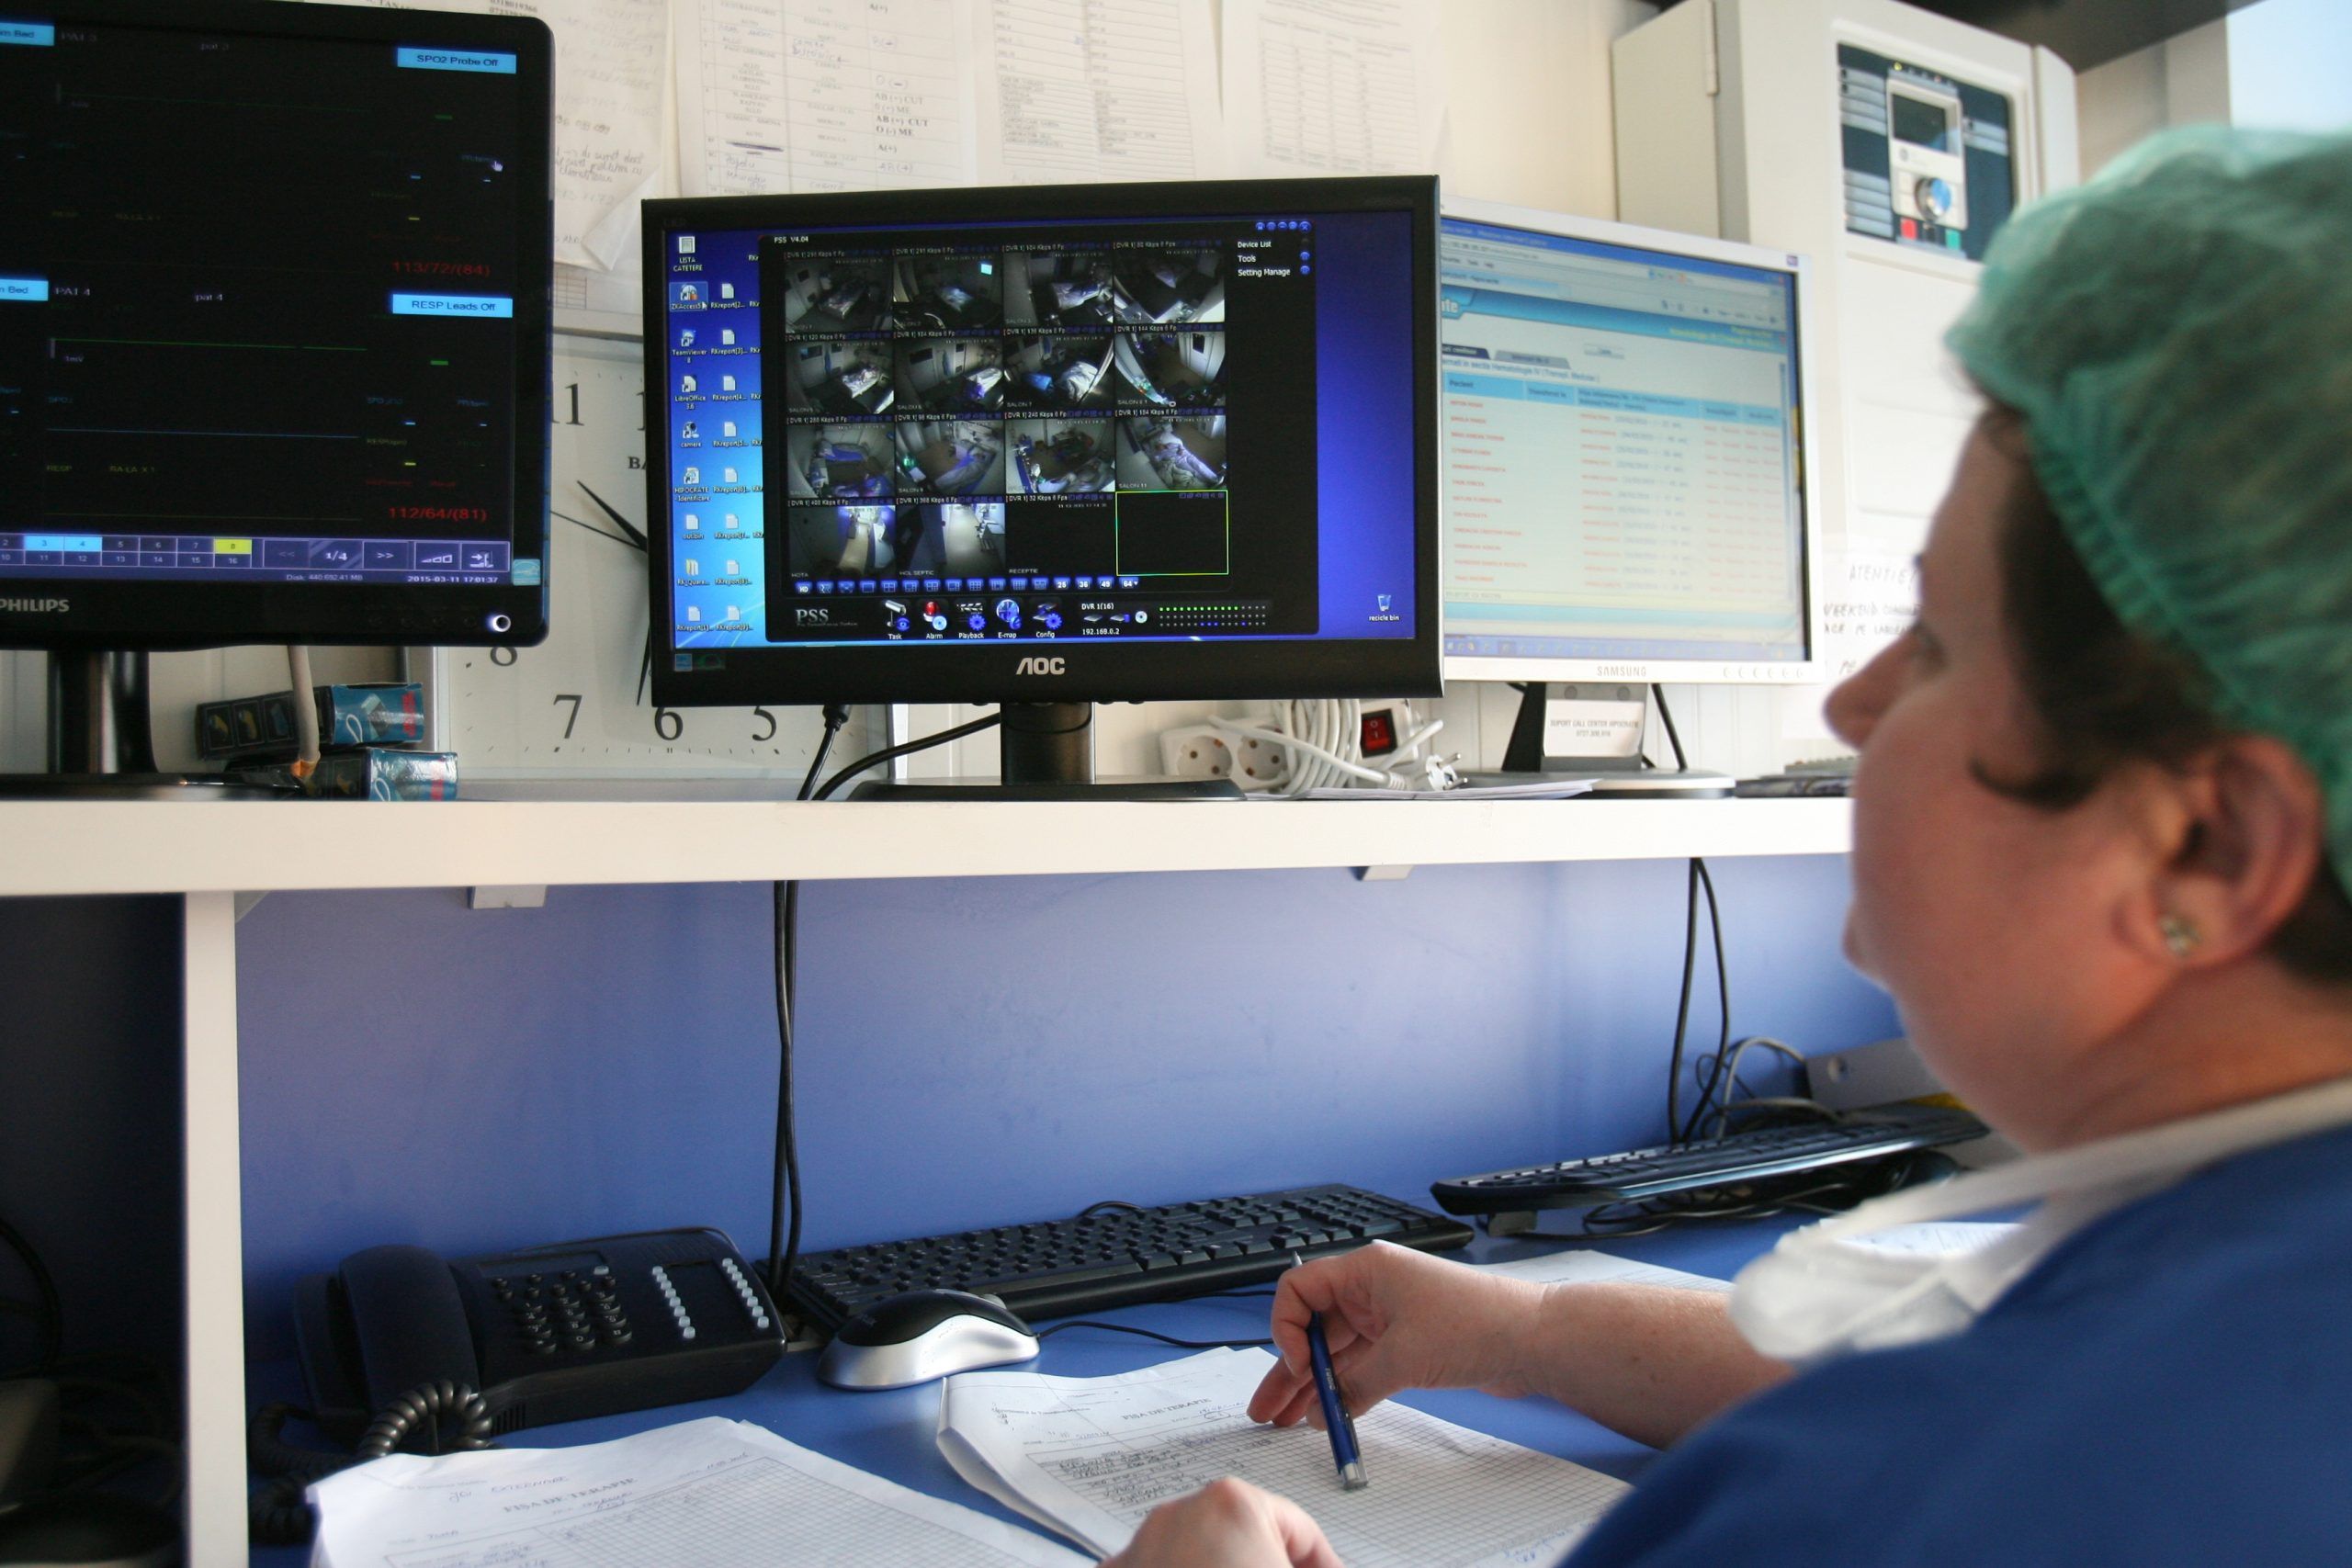 Pupitrul asistentelor” este locul în care sunt monitorizate permanent informațiile despre starea pacienților, atât prin intermediul aparatelor la care bolnavii sunt conectați, cât și audio-video